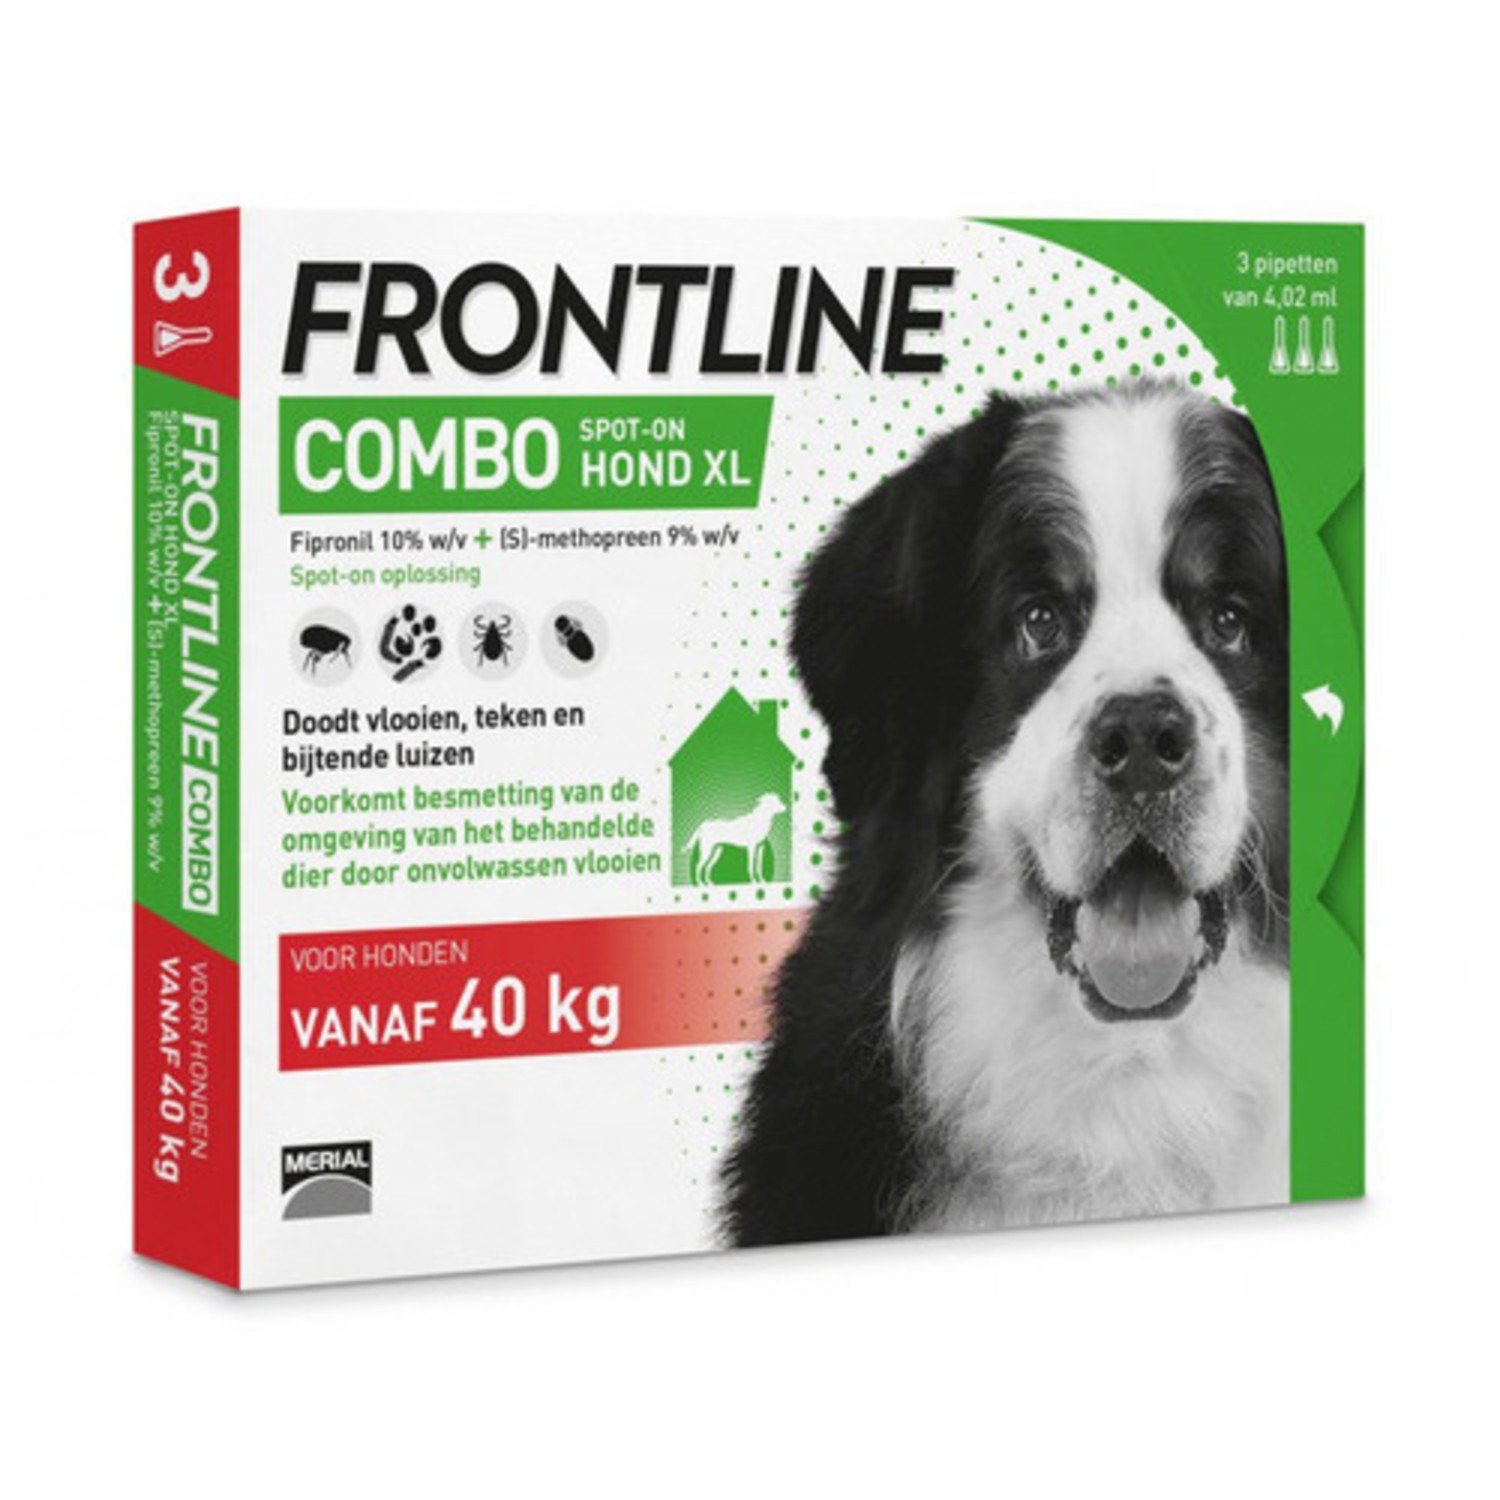 Beenmerg Naar de waarheid gitaar Frontline combo spot on 40 kg hond 3 pip XL - Agridiscounter